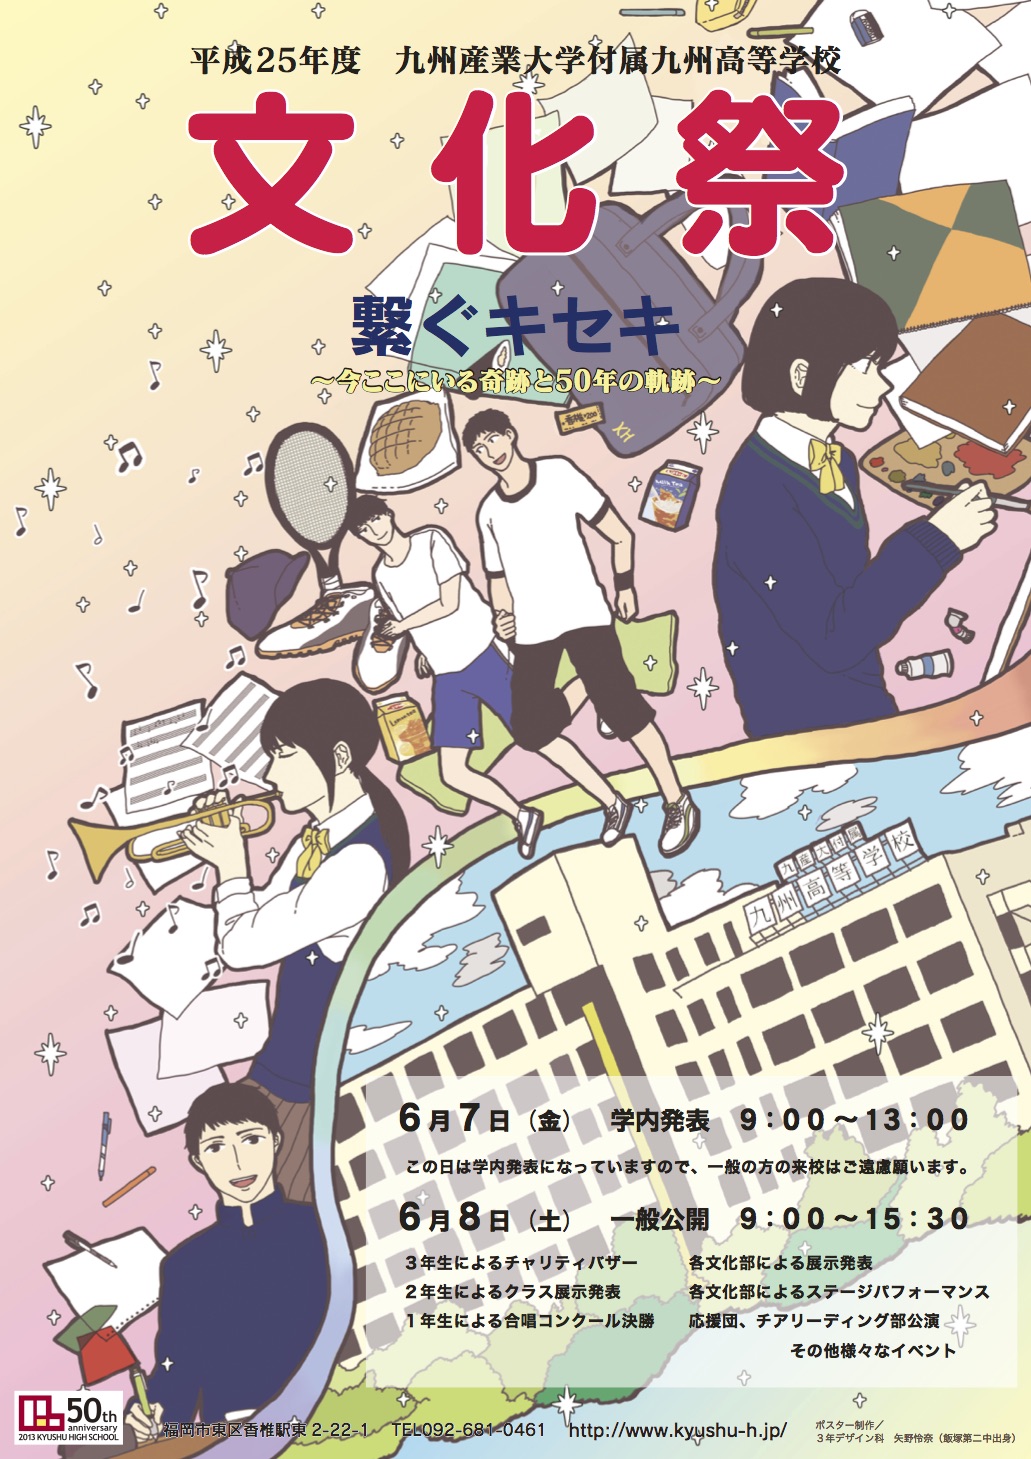 九州高等学校 造形芸術科サイト 平成25年度 文化祭ポスター